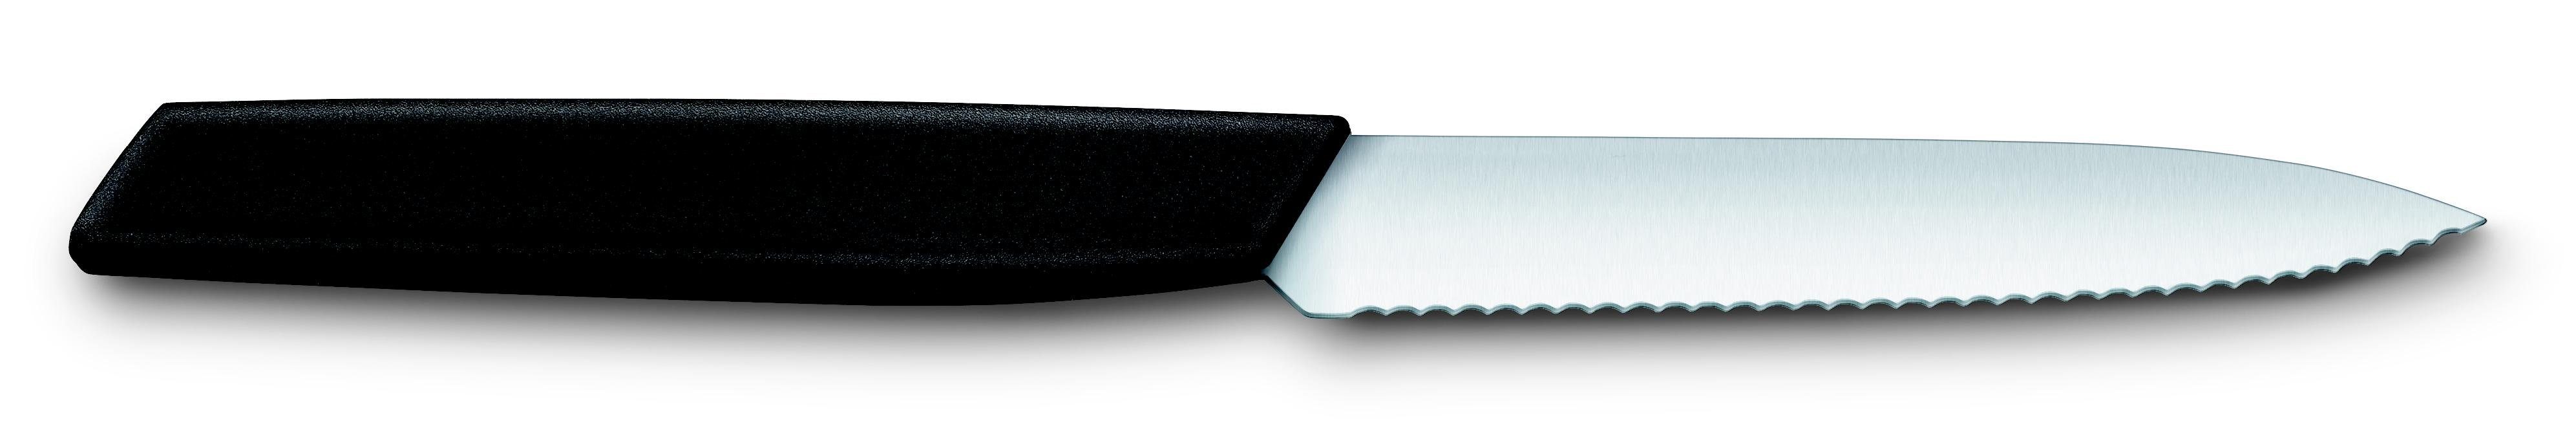 Victorinox Taschenmesser Paring knife, wavy, 10 cm, black